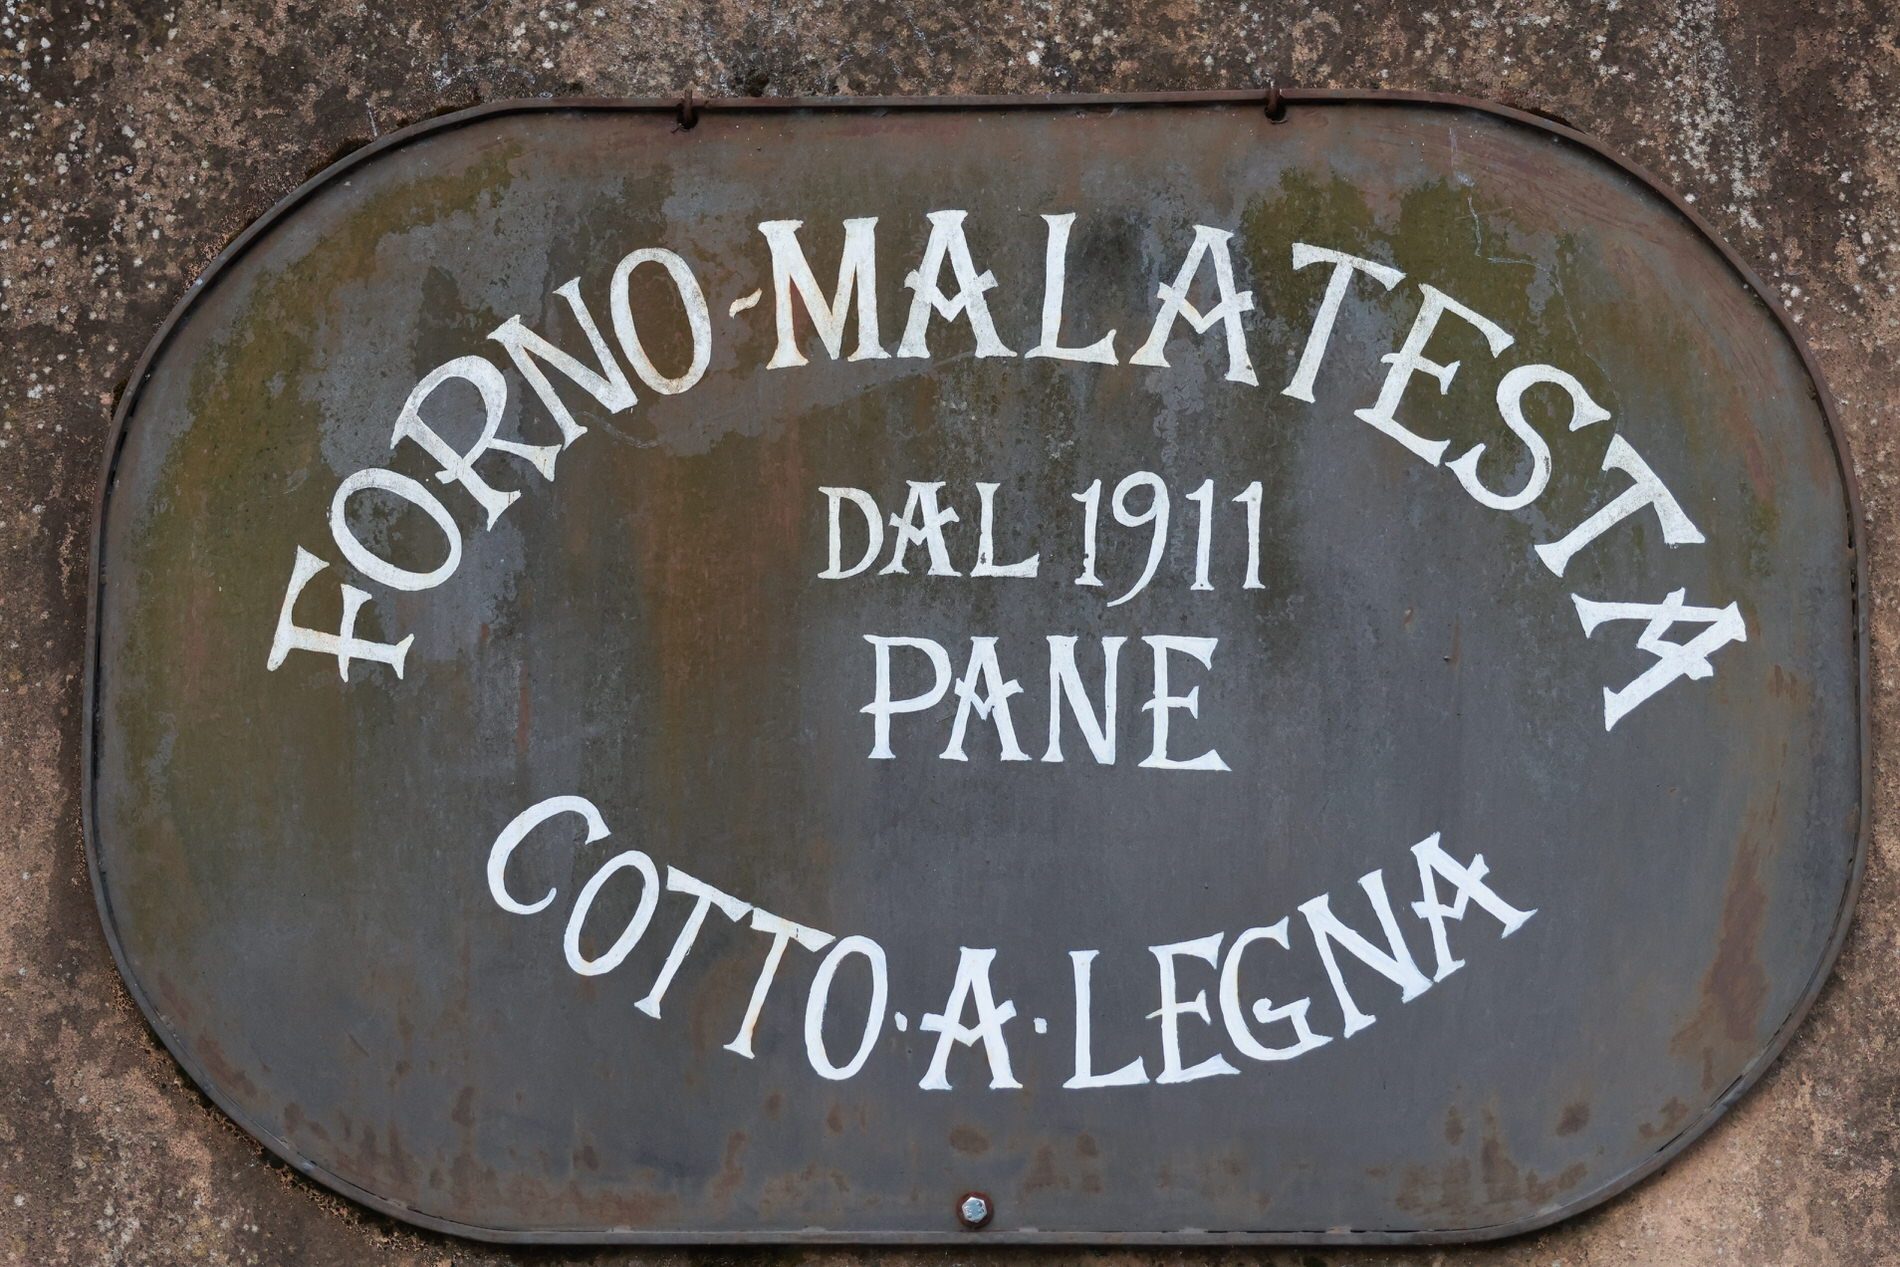 Panificio-Malatesta-Produttori-Locali-Pallerone-Lunigiana1_1